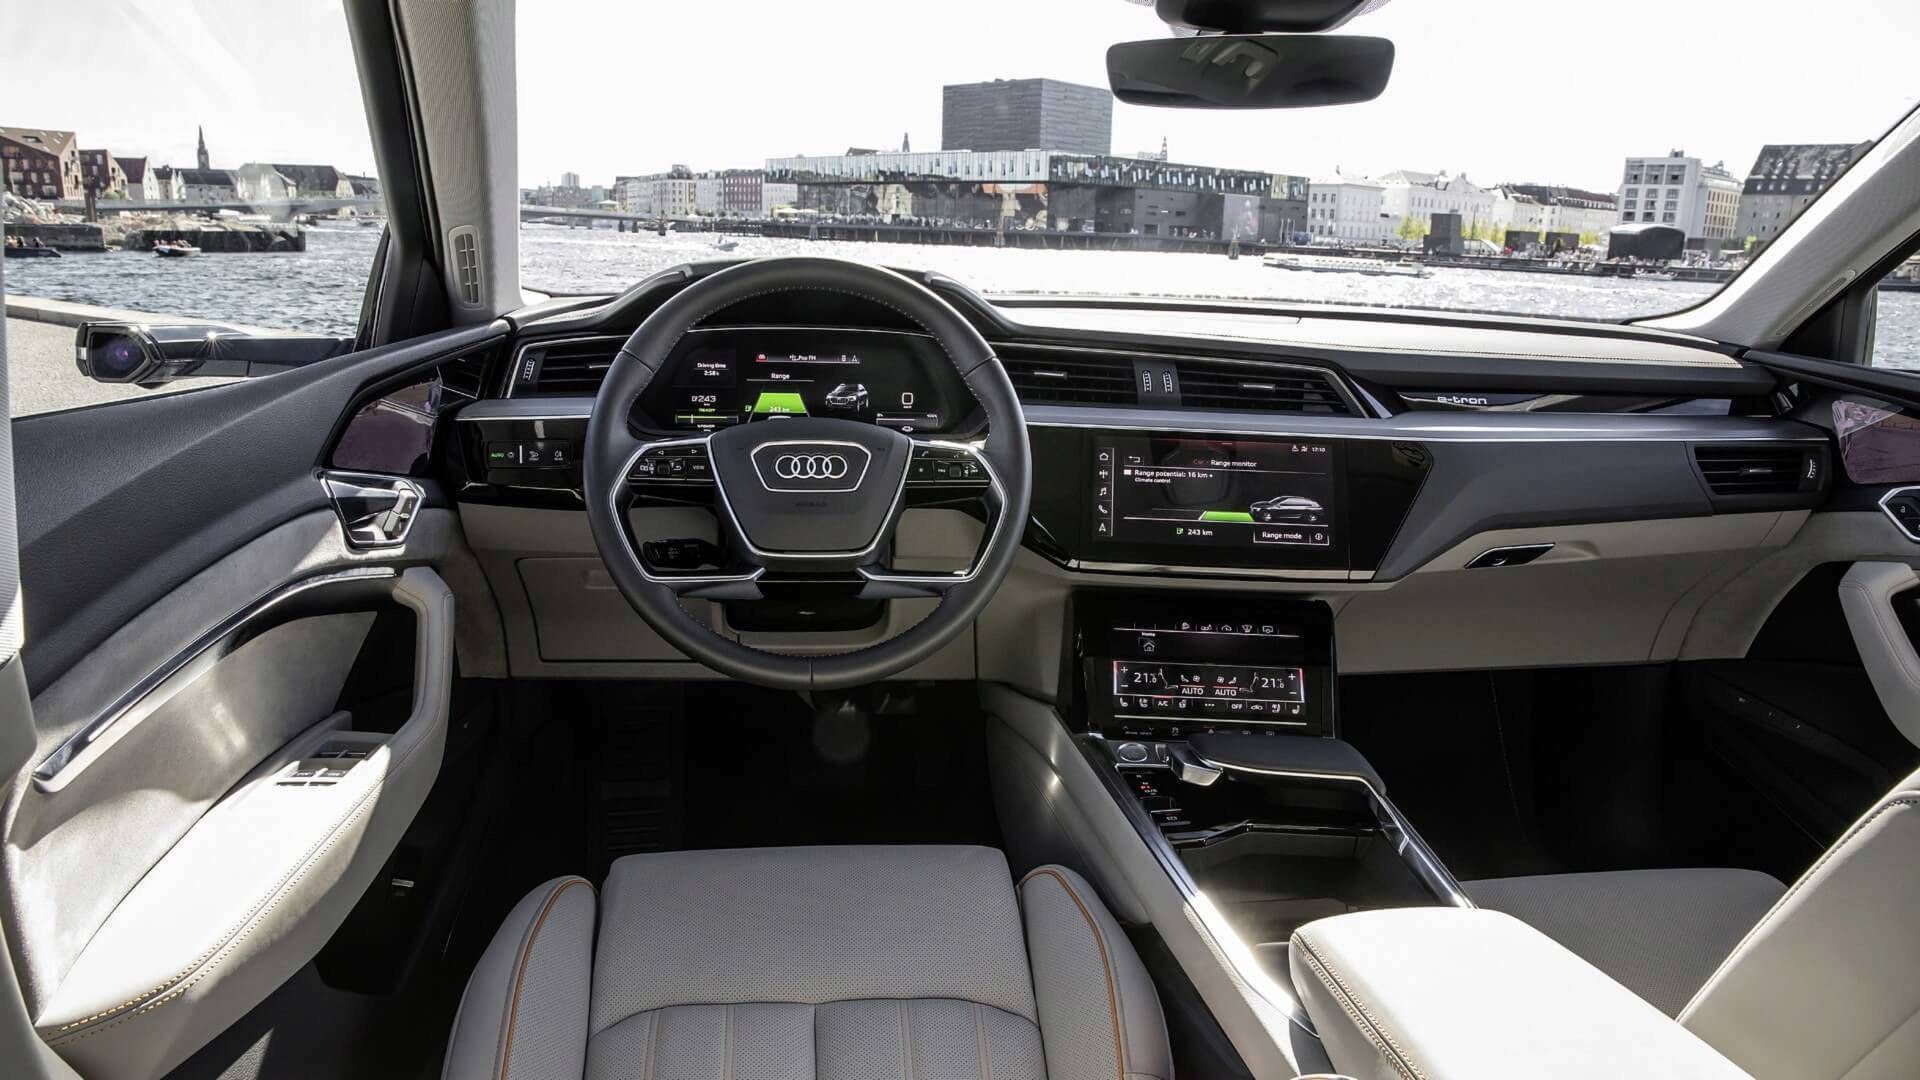 2020 Audi E-Tron cockpit